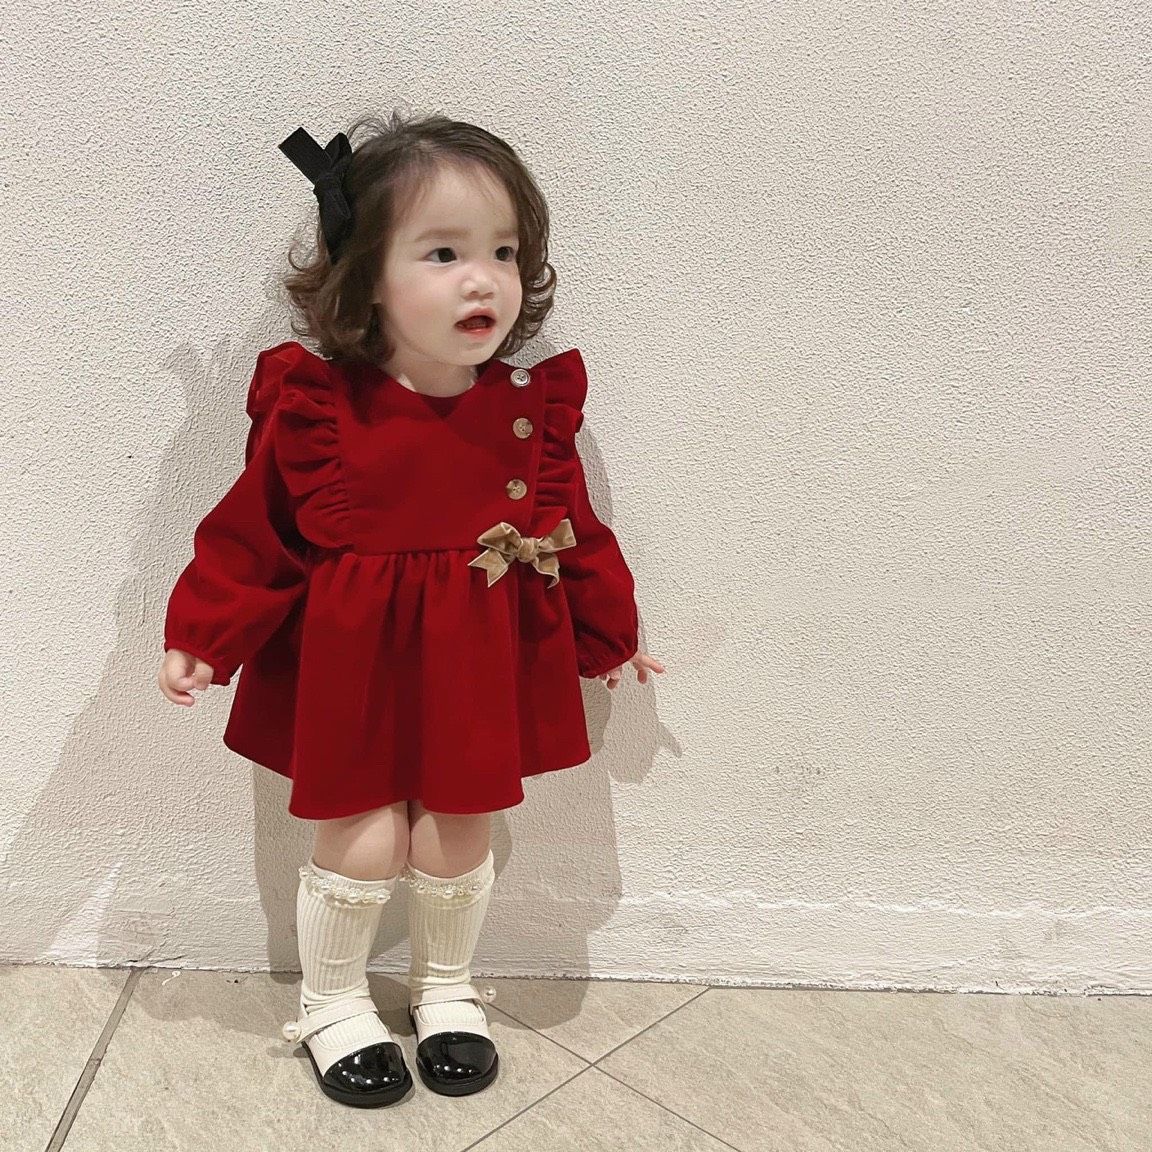 Shop quần áo trẻ em tại Hải Phòng - Váy đỏ Trung Hoa cổ tàu cao cấp